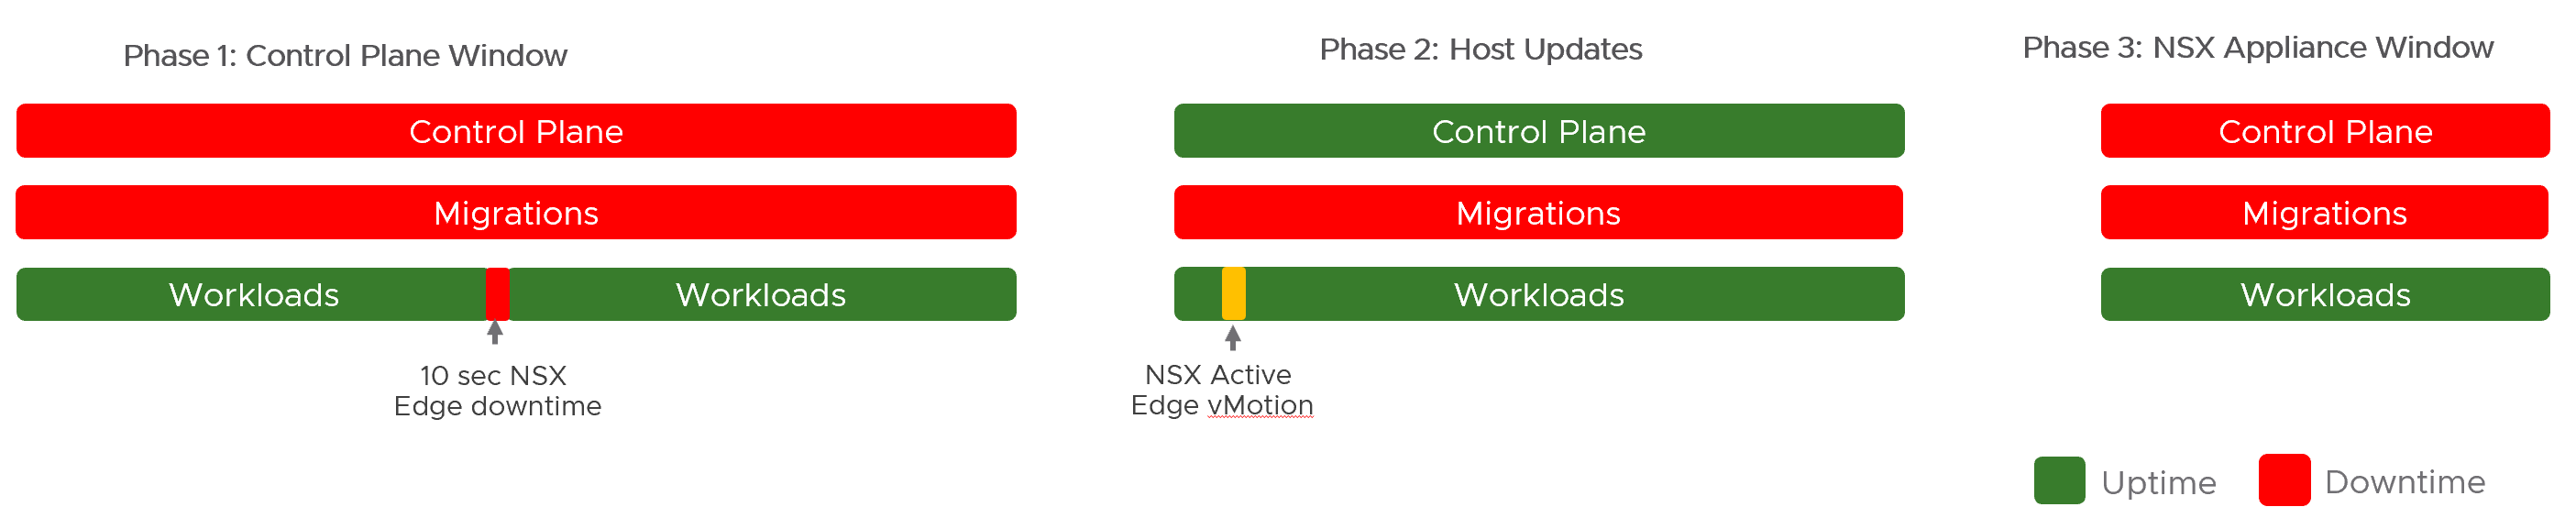 此图显示不同迁移阶段对基础架构不同组件的可用性的影响。